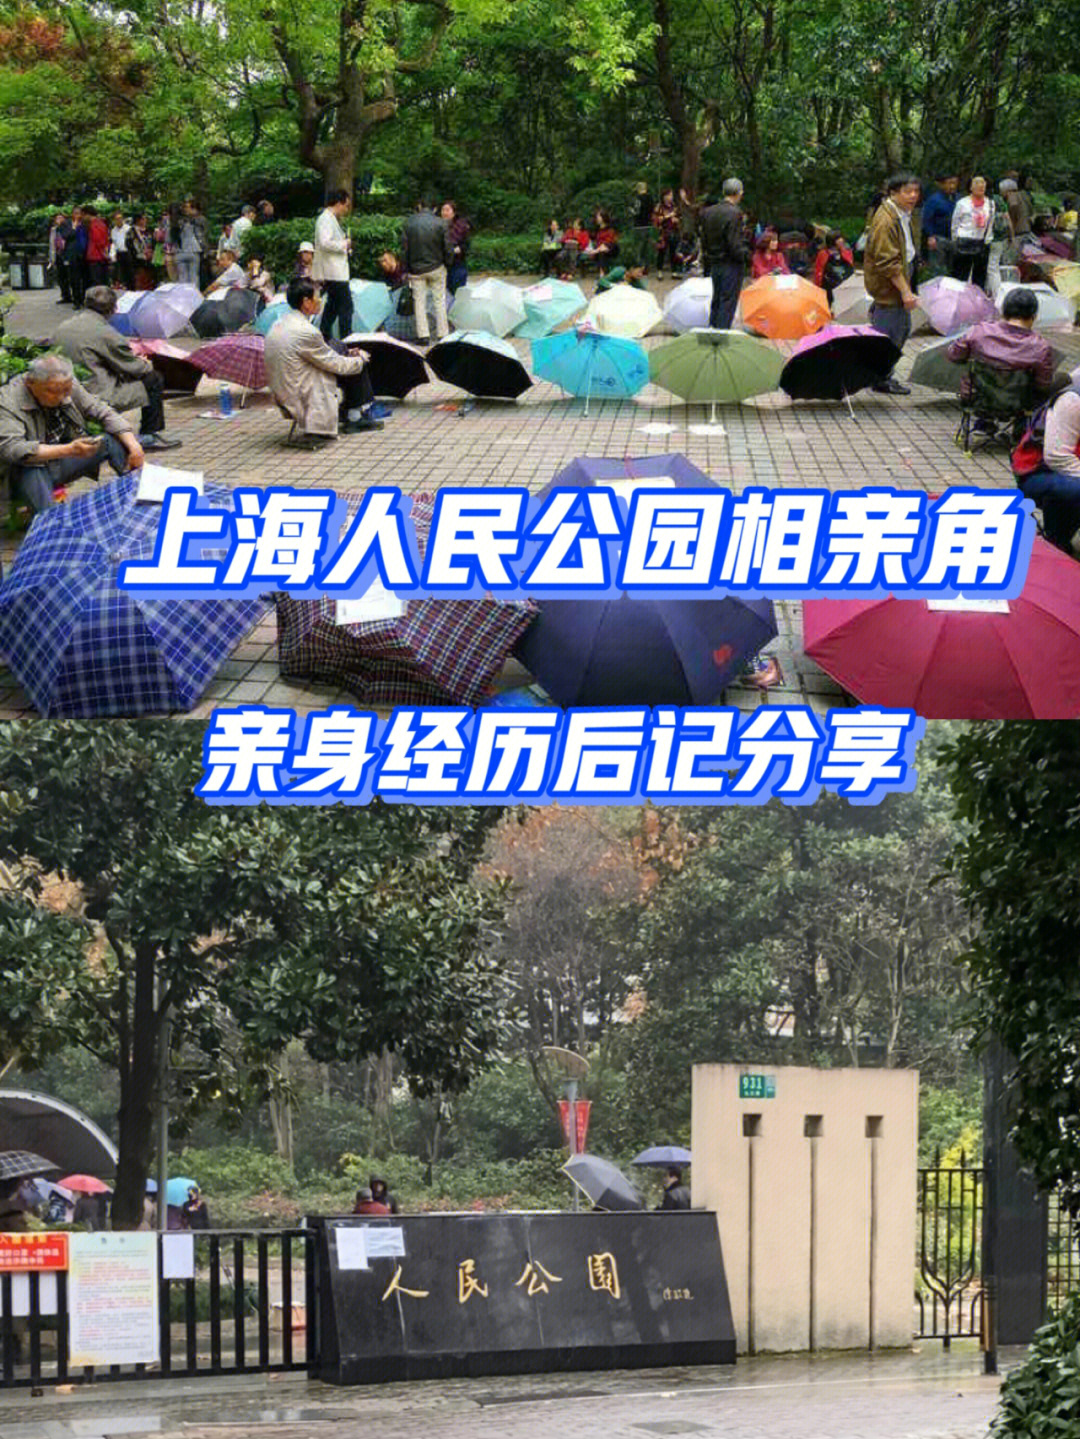 探店上海人民公园相亲角后记6565说真的, 我跟朋友都是 90后, 快